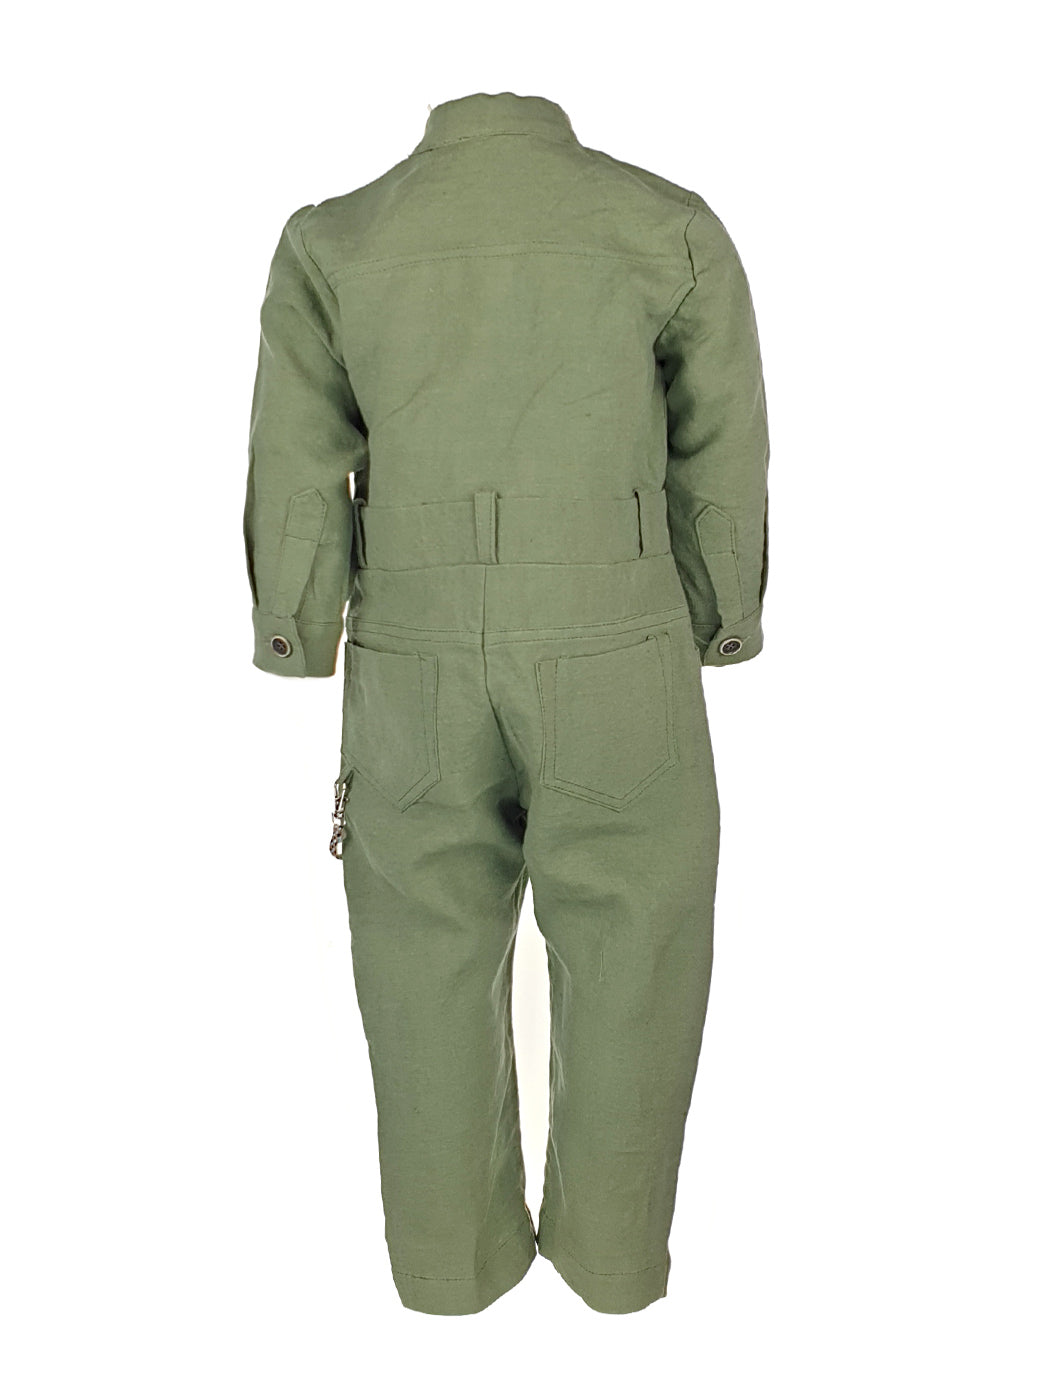 Boy's Jumpsuit - PILOT UNIFORM Green